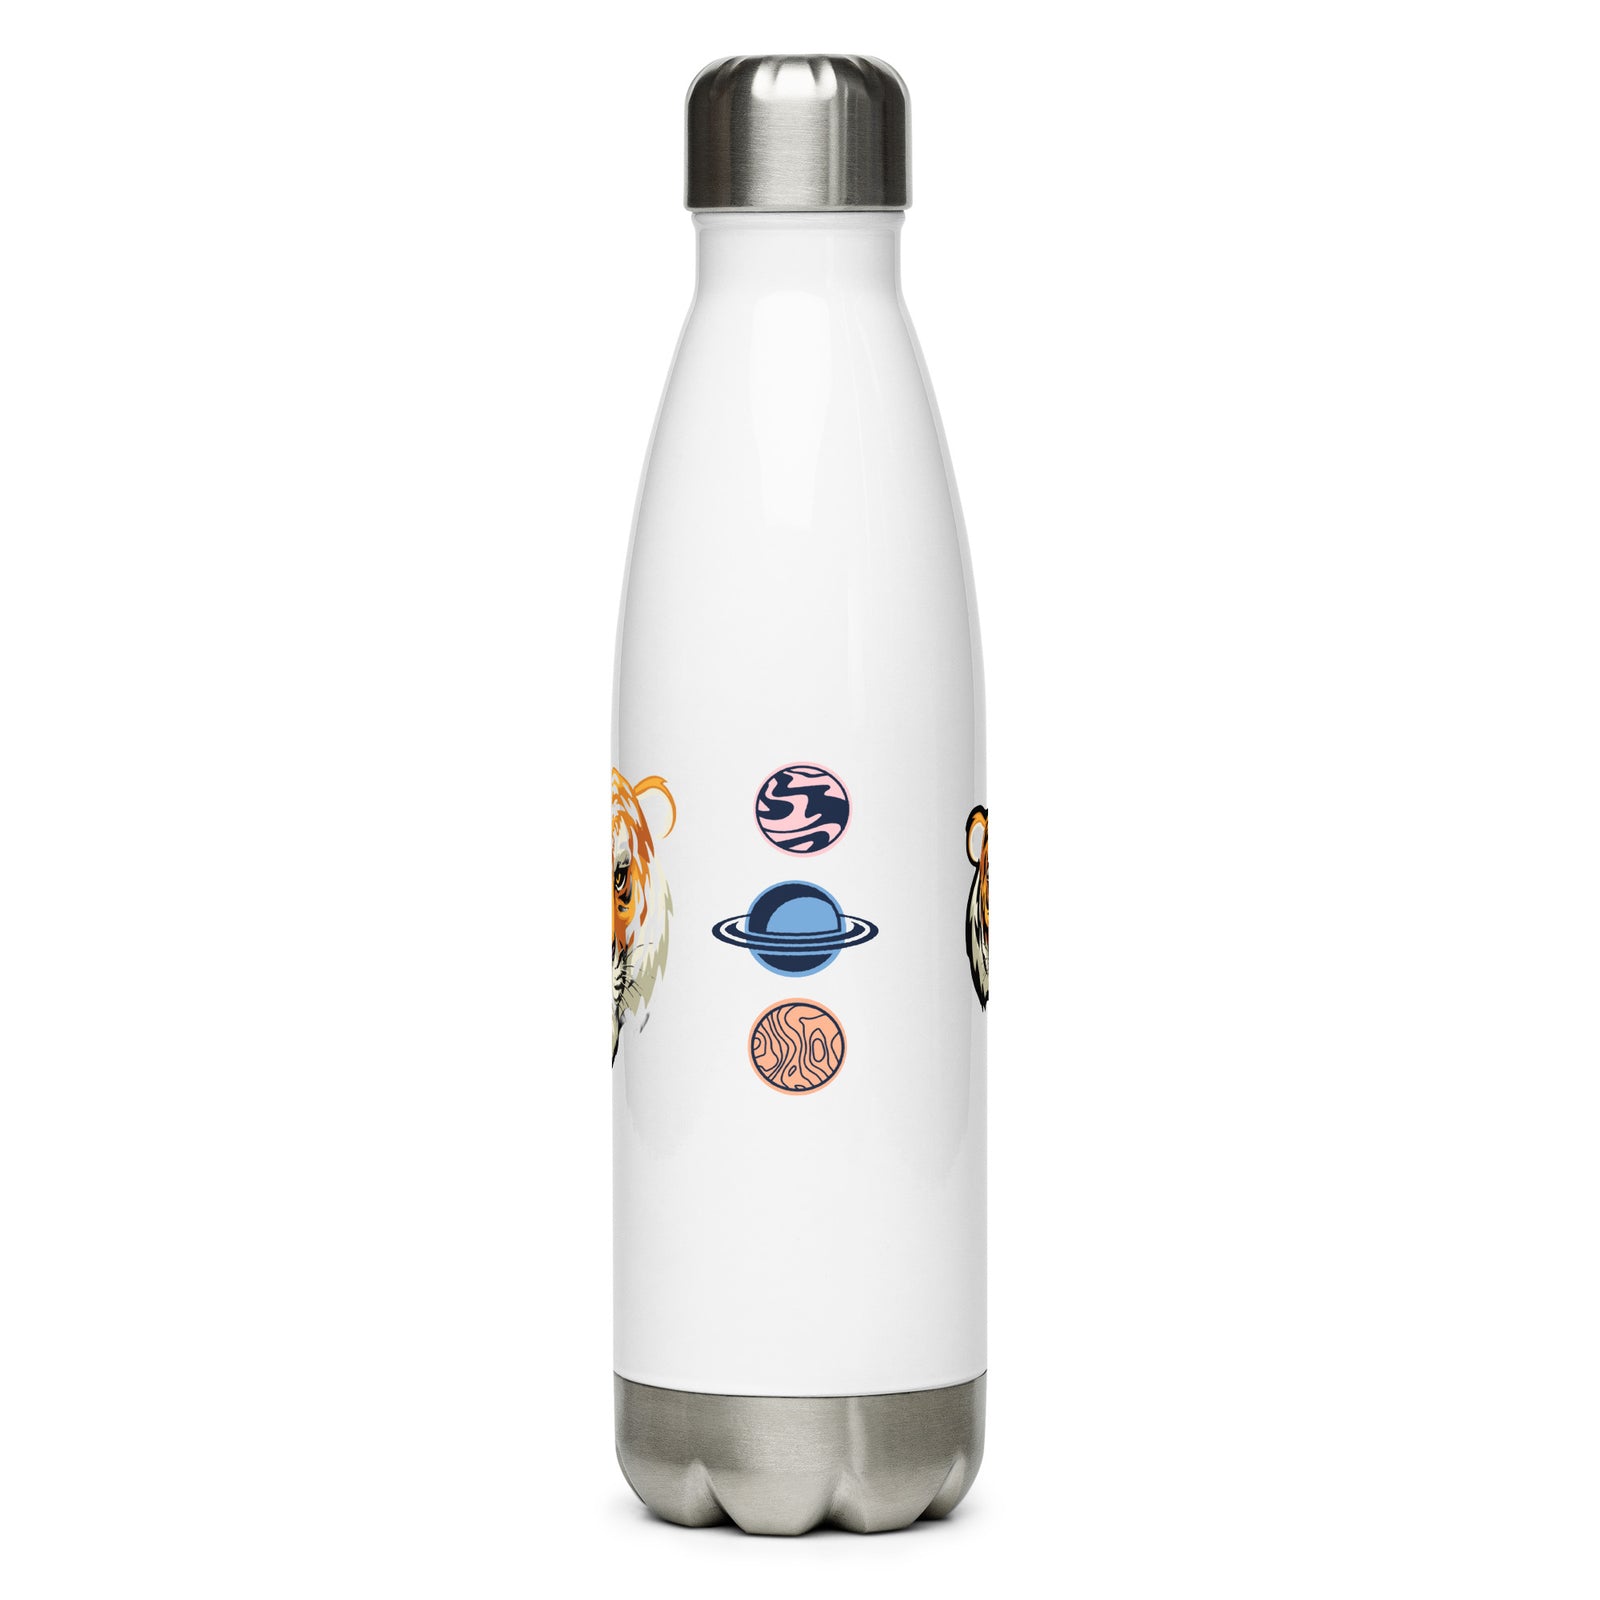 Stainless steel water bottle - TryKid